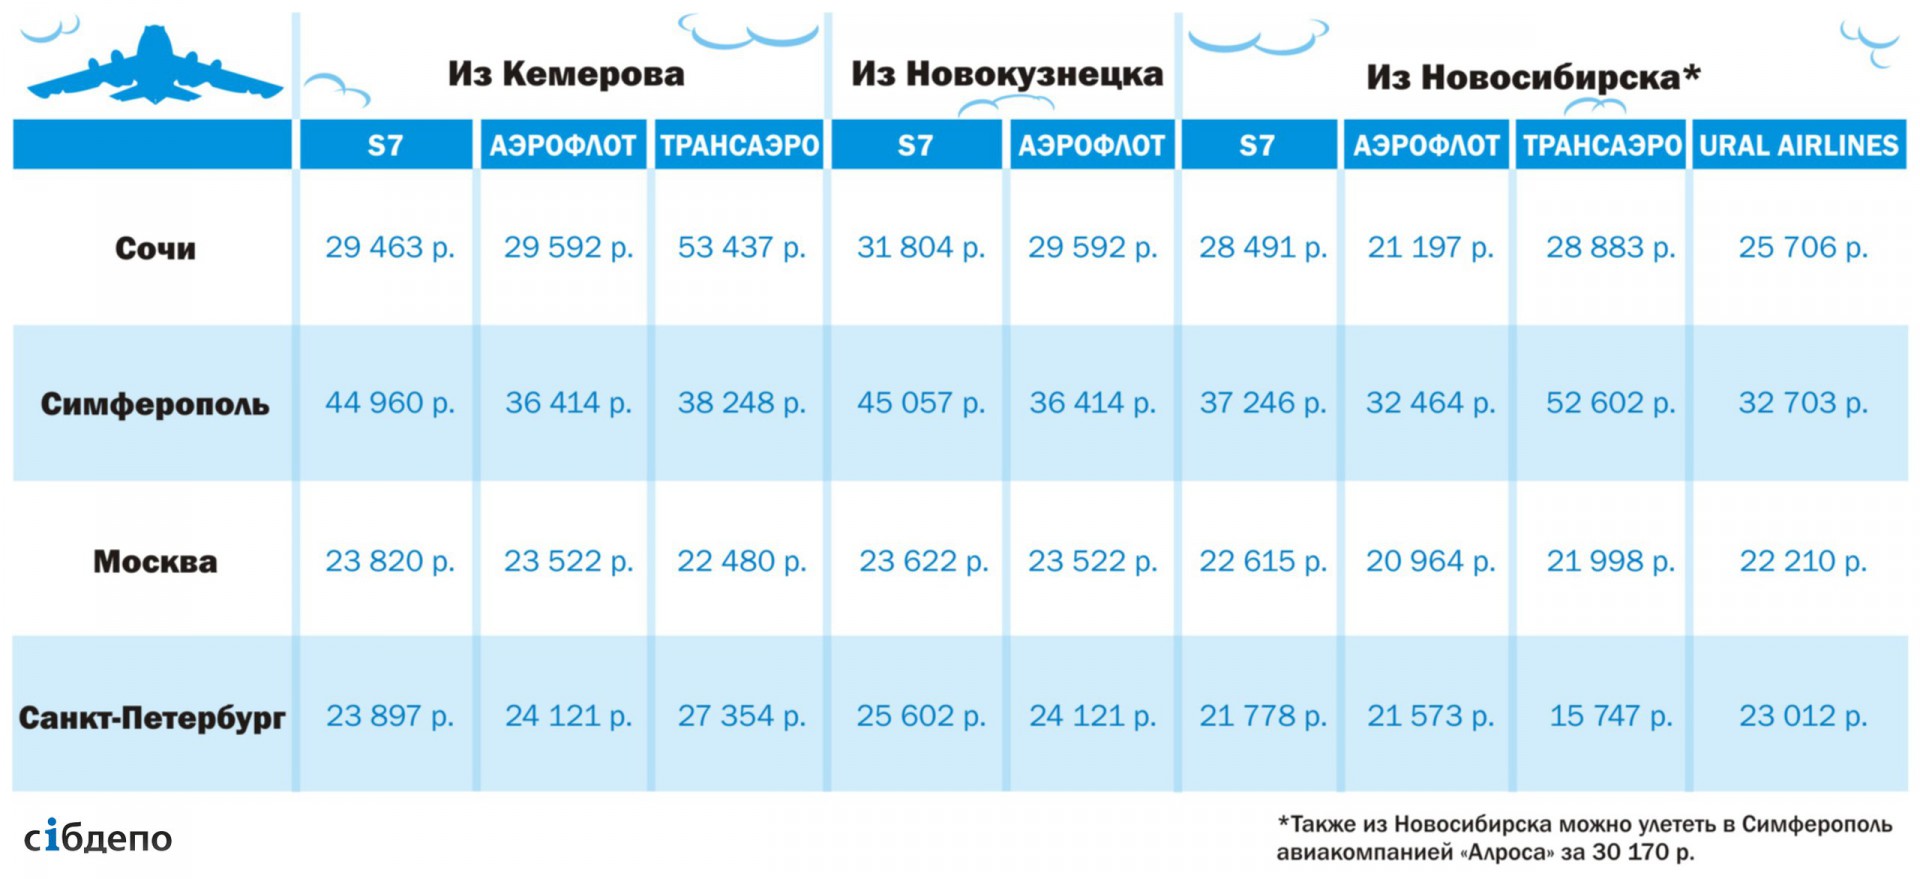 Авиабилеты кемерово новосибирск расписание цена стоимость билетов пермь краснодар самолет